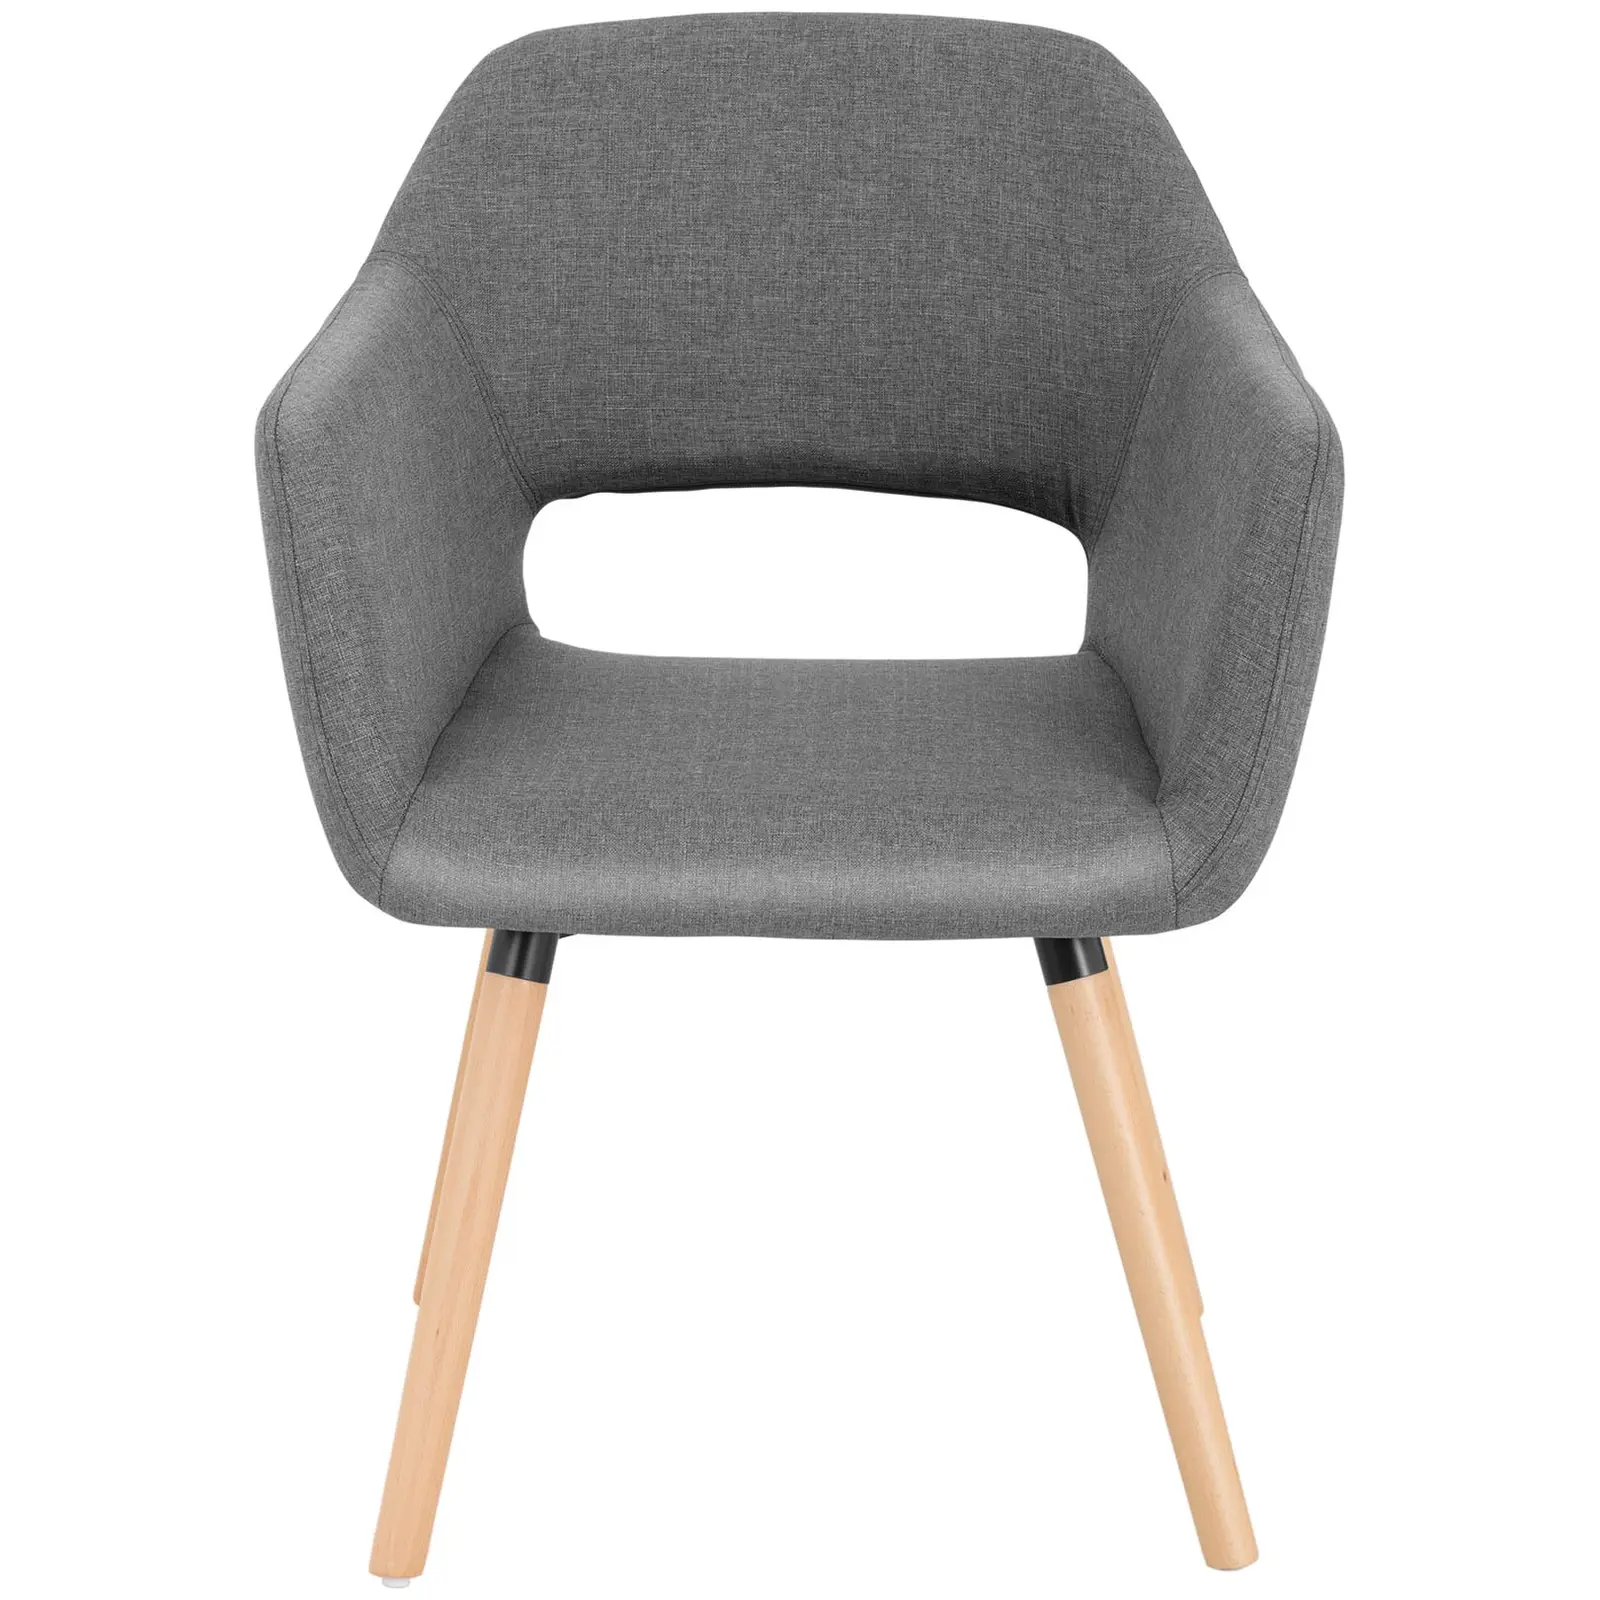 Krzesło tapicerowane - szare